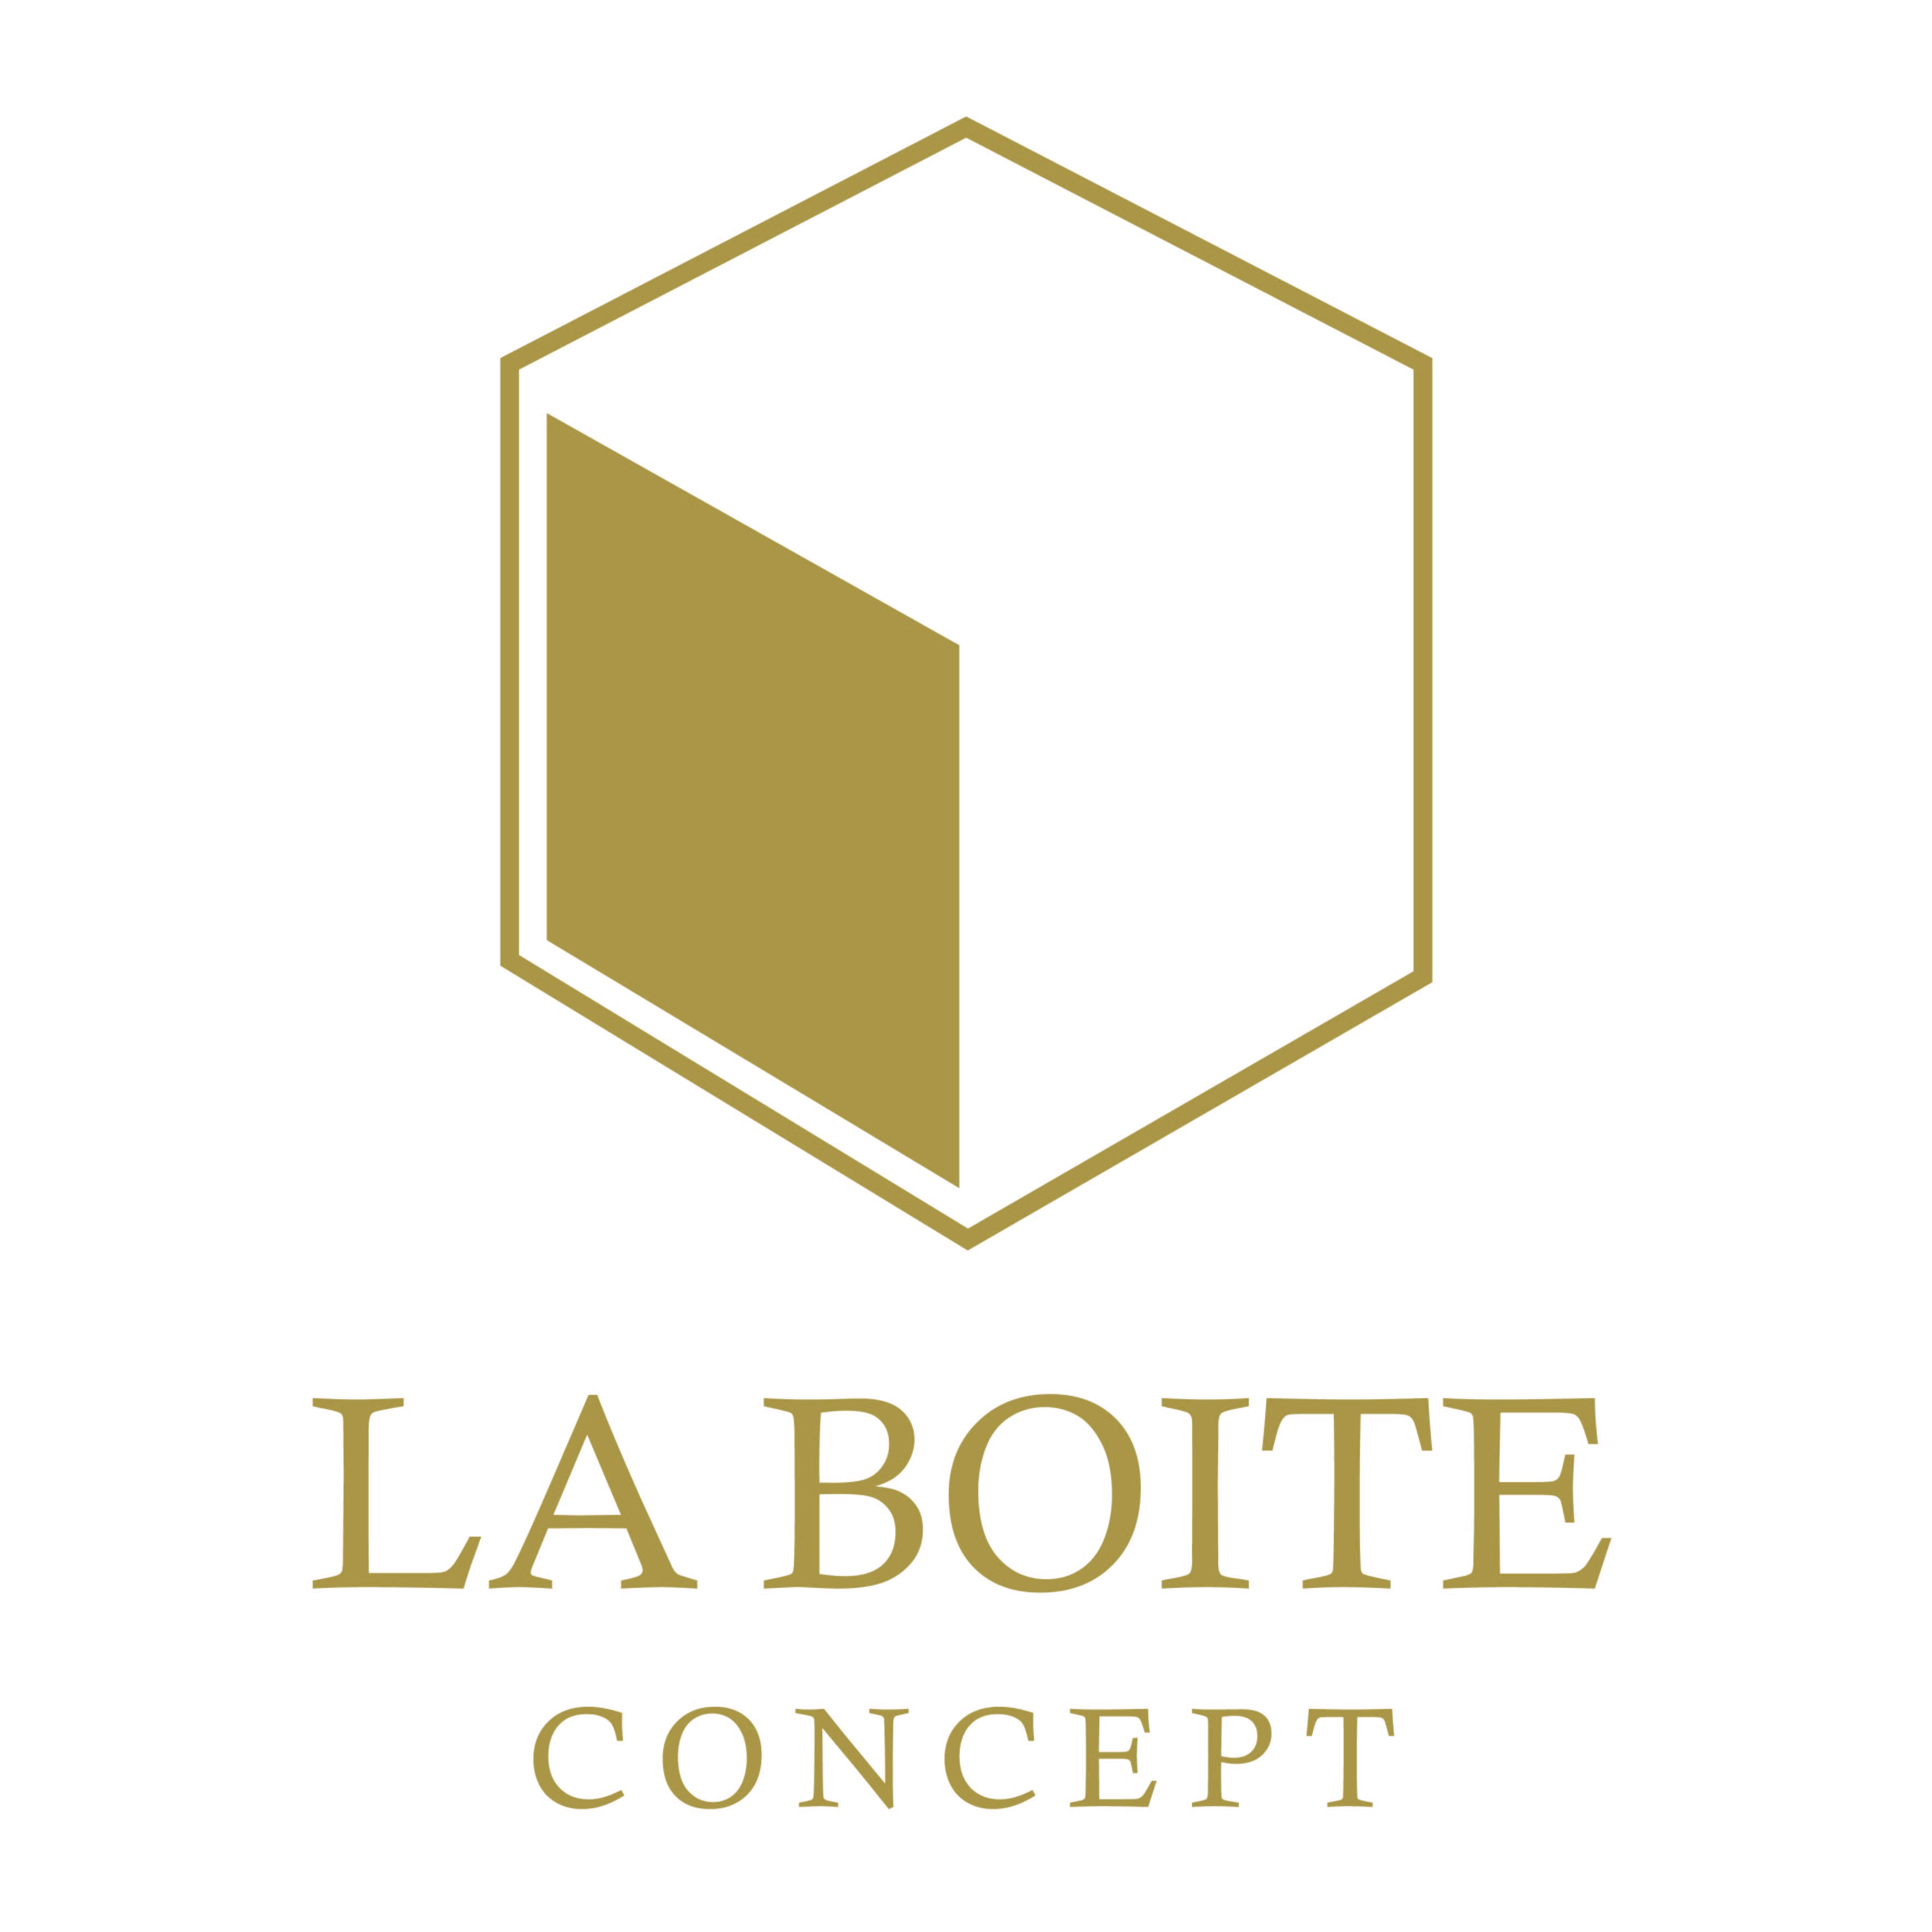 La Boite concept - Logo.jpg